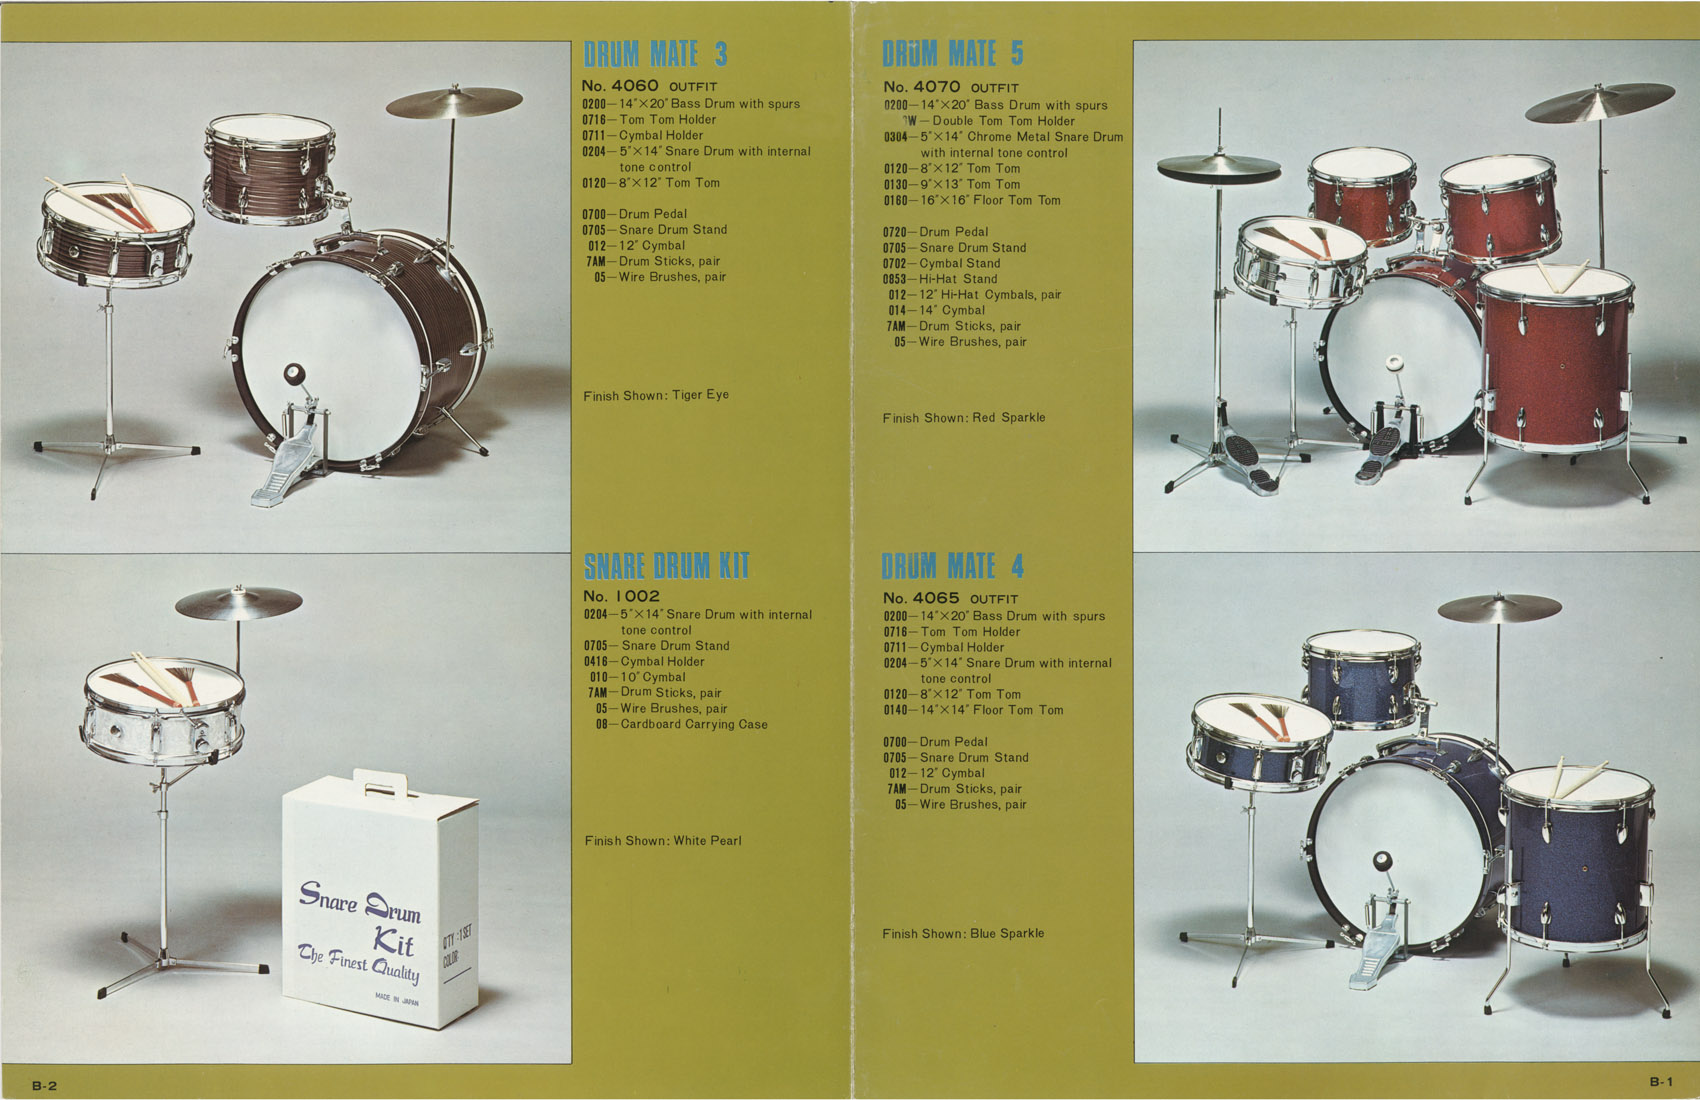 1966 Drum Mate